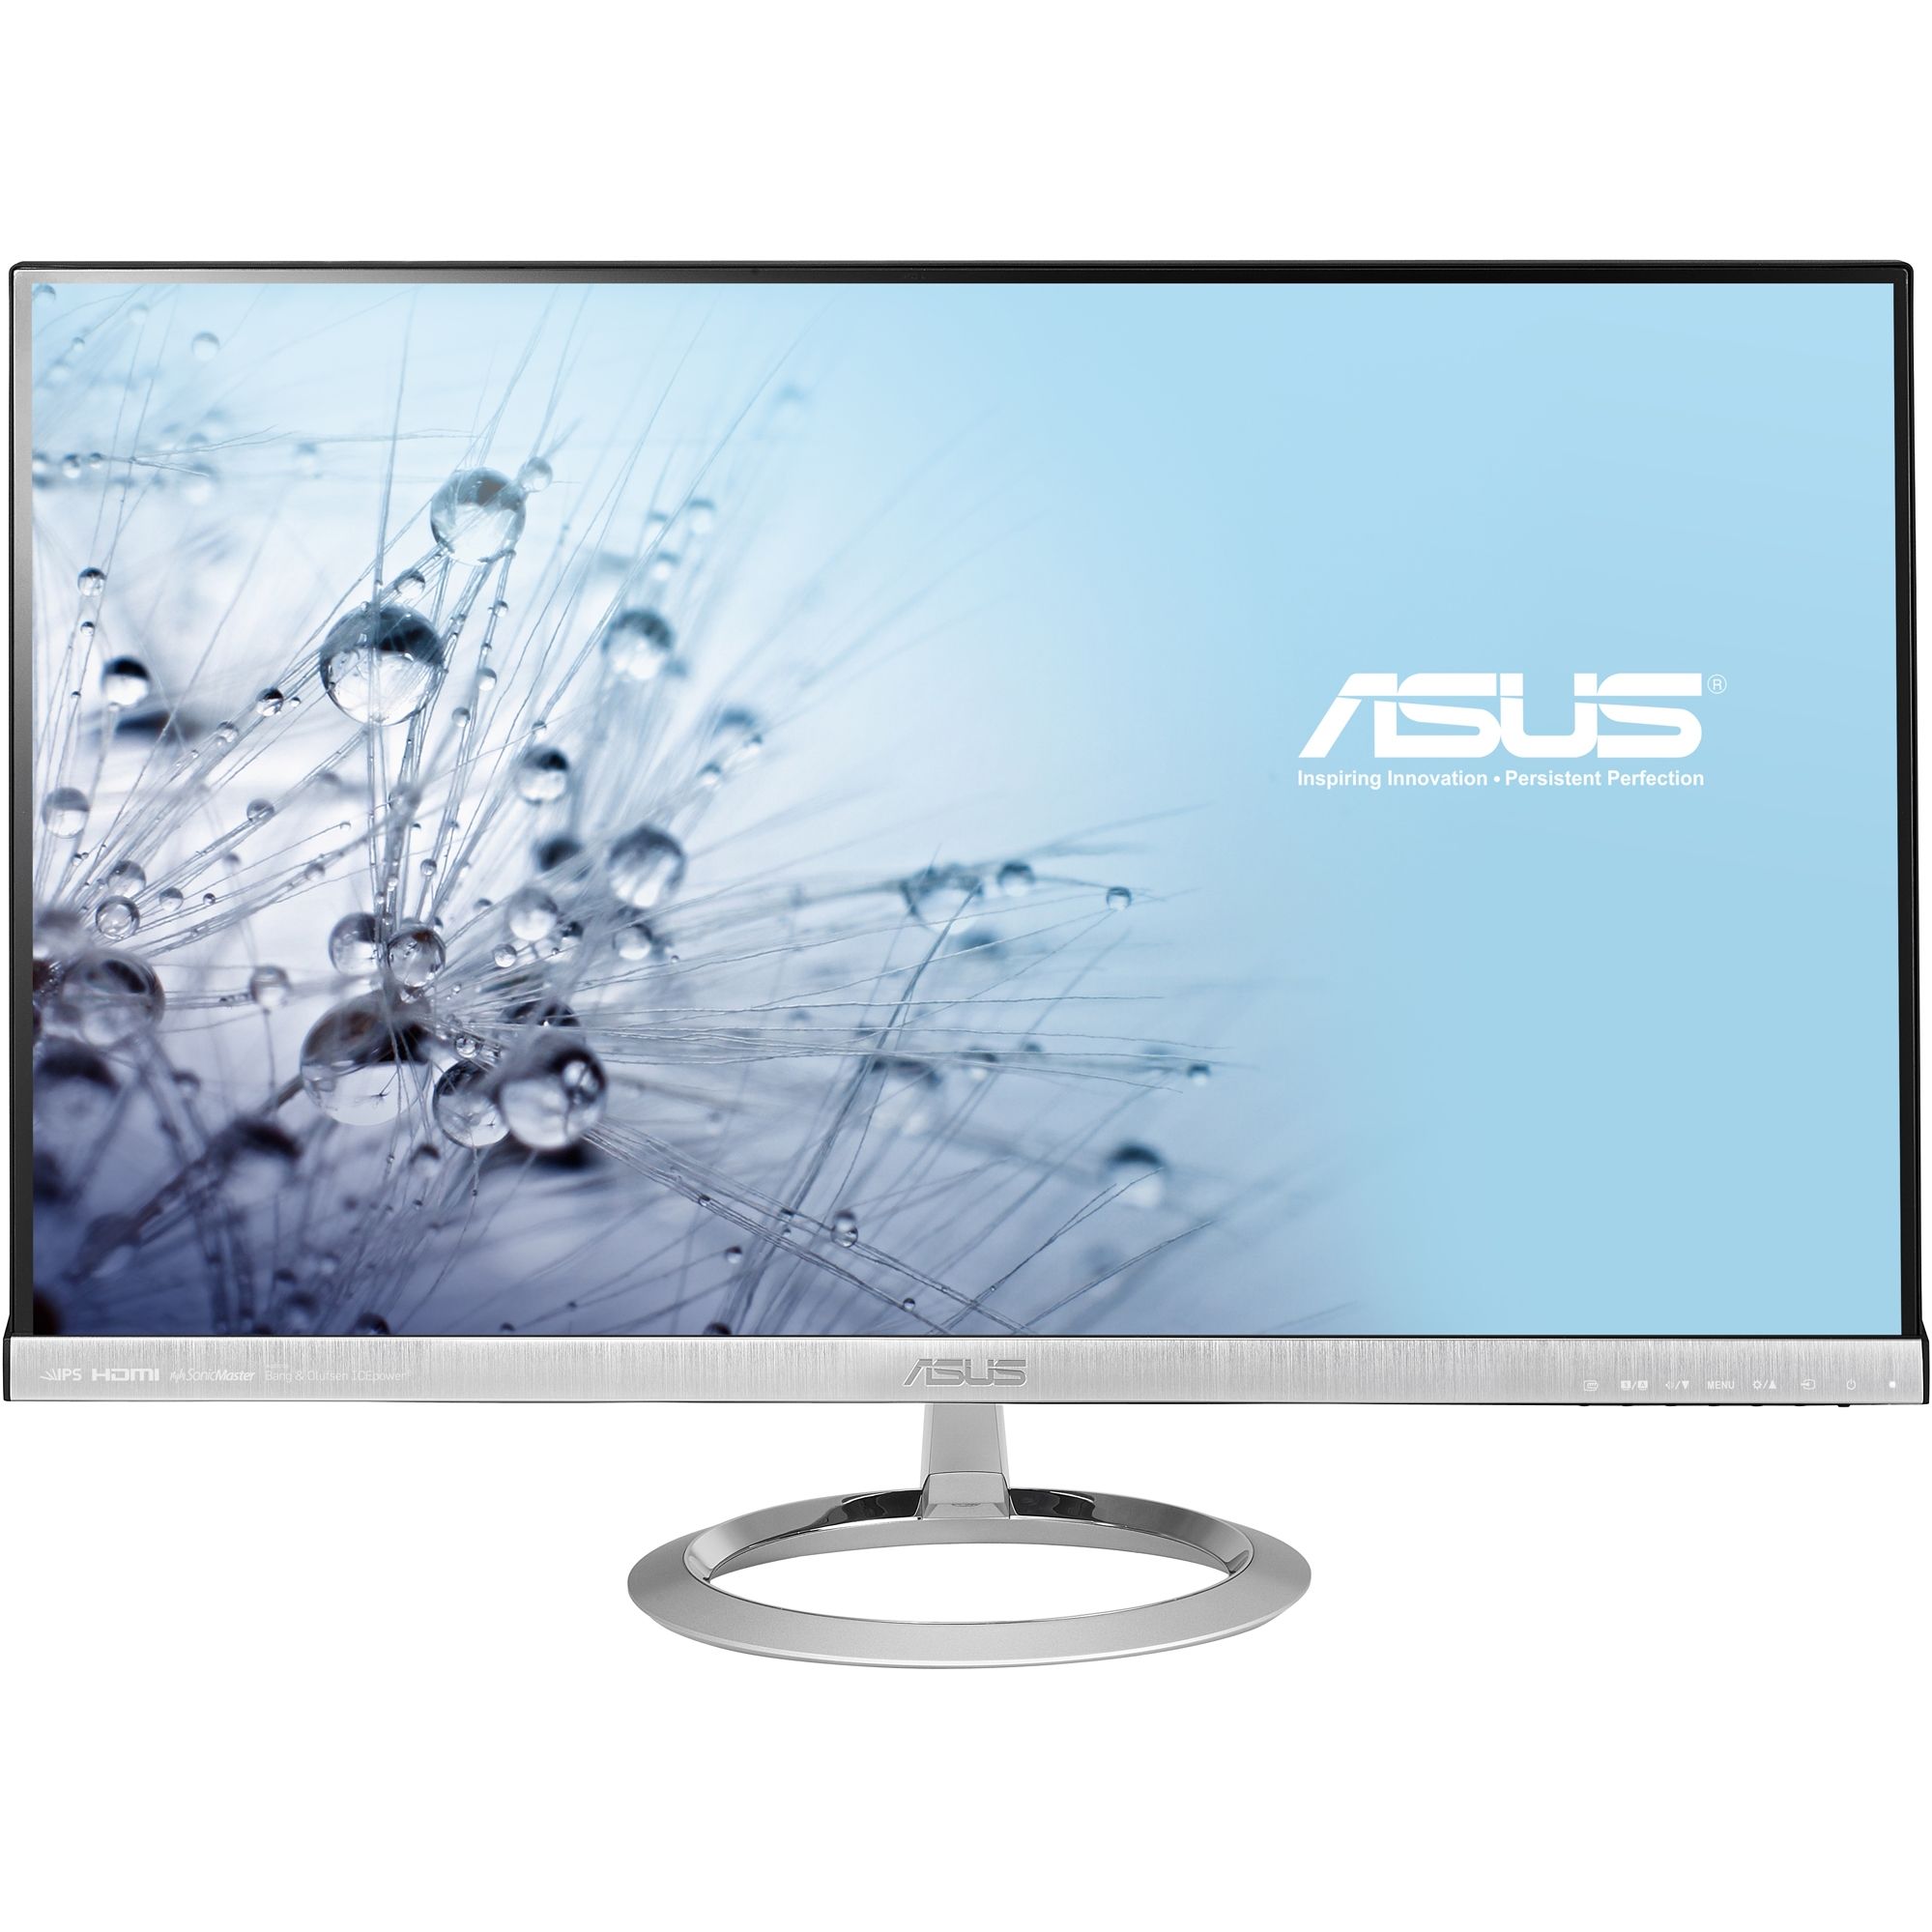  Monitor LED Asus MX279H, 27", Full HD, Argintiu 